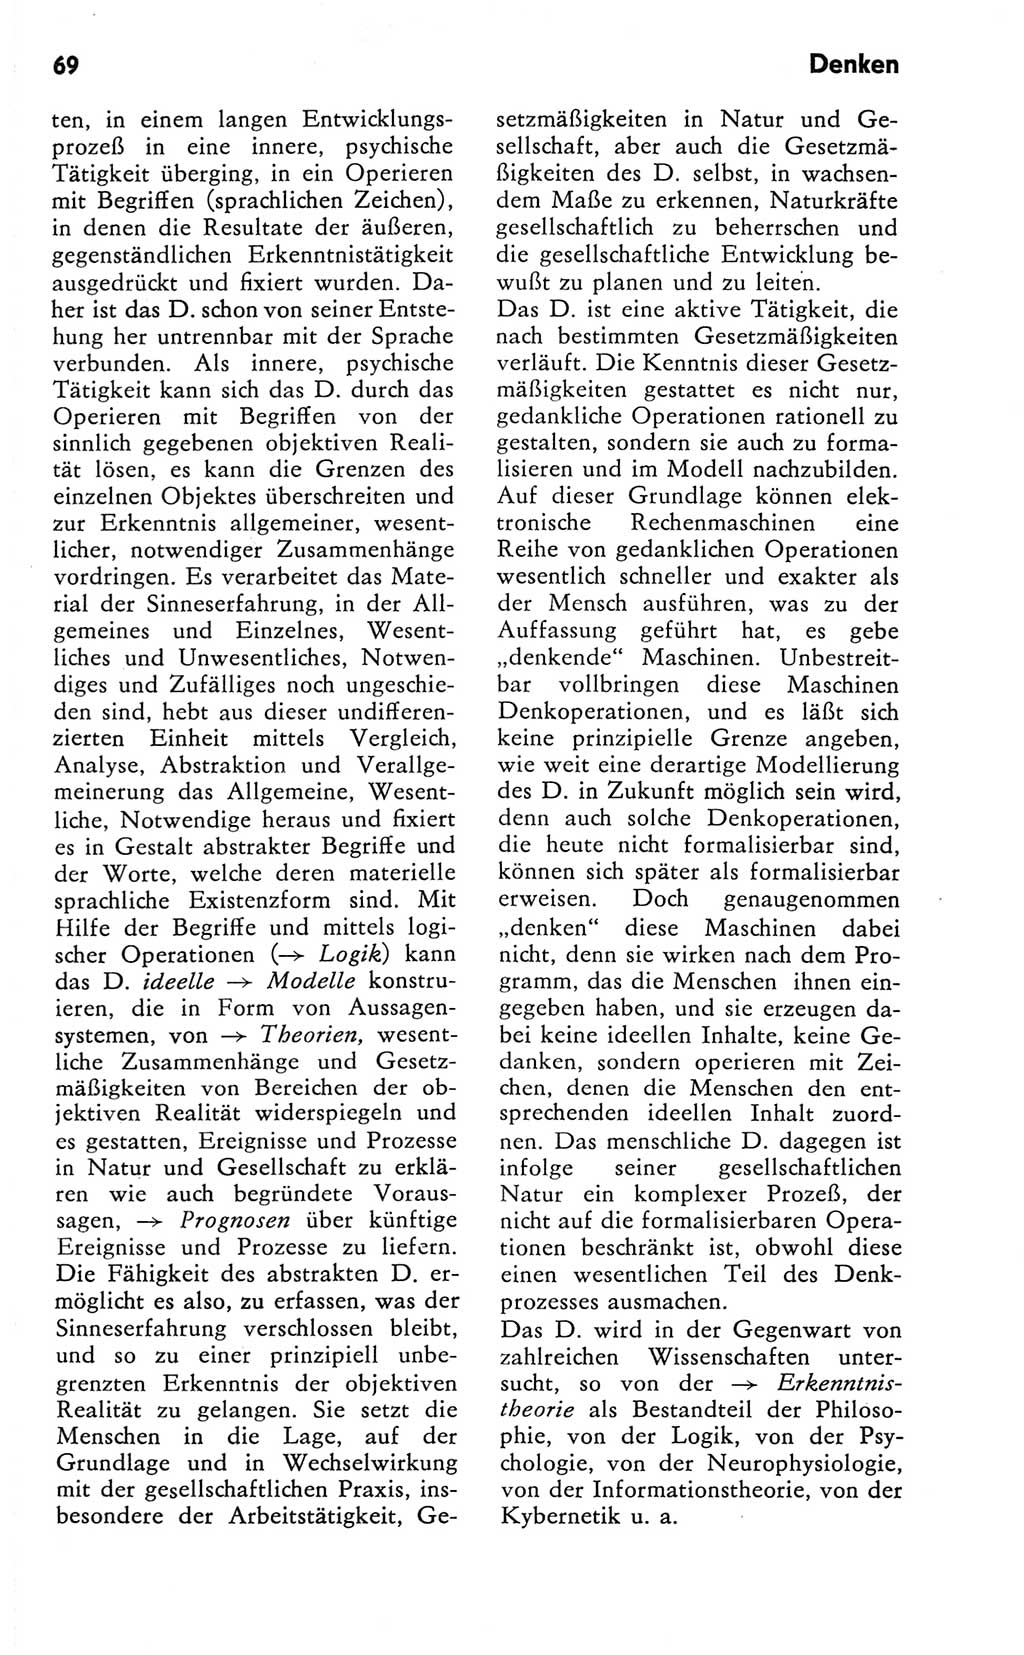 Kleines Wörterbuch der marxistisch-leninistischen Philosophie [Deutsche Demokratische Republik (DDR)] 1981, Seite 69 (Kl. Wb. ML Phil. DDR 1981, S. 69)